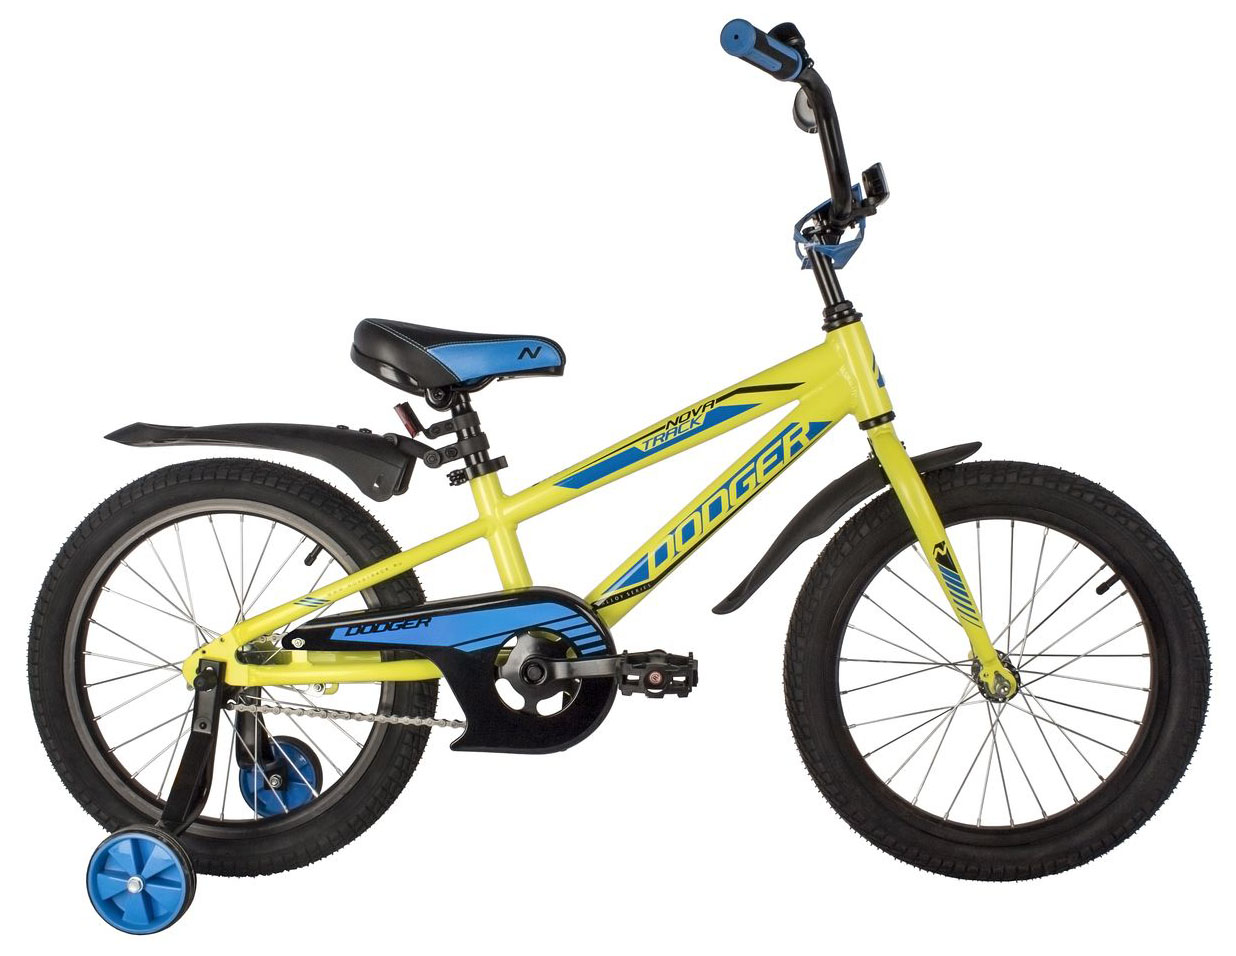  Отзывы о Детском велосипеде Novatrack Dodger 18 2022